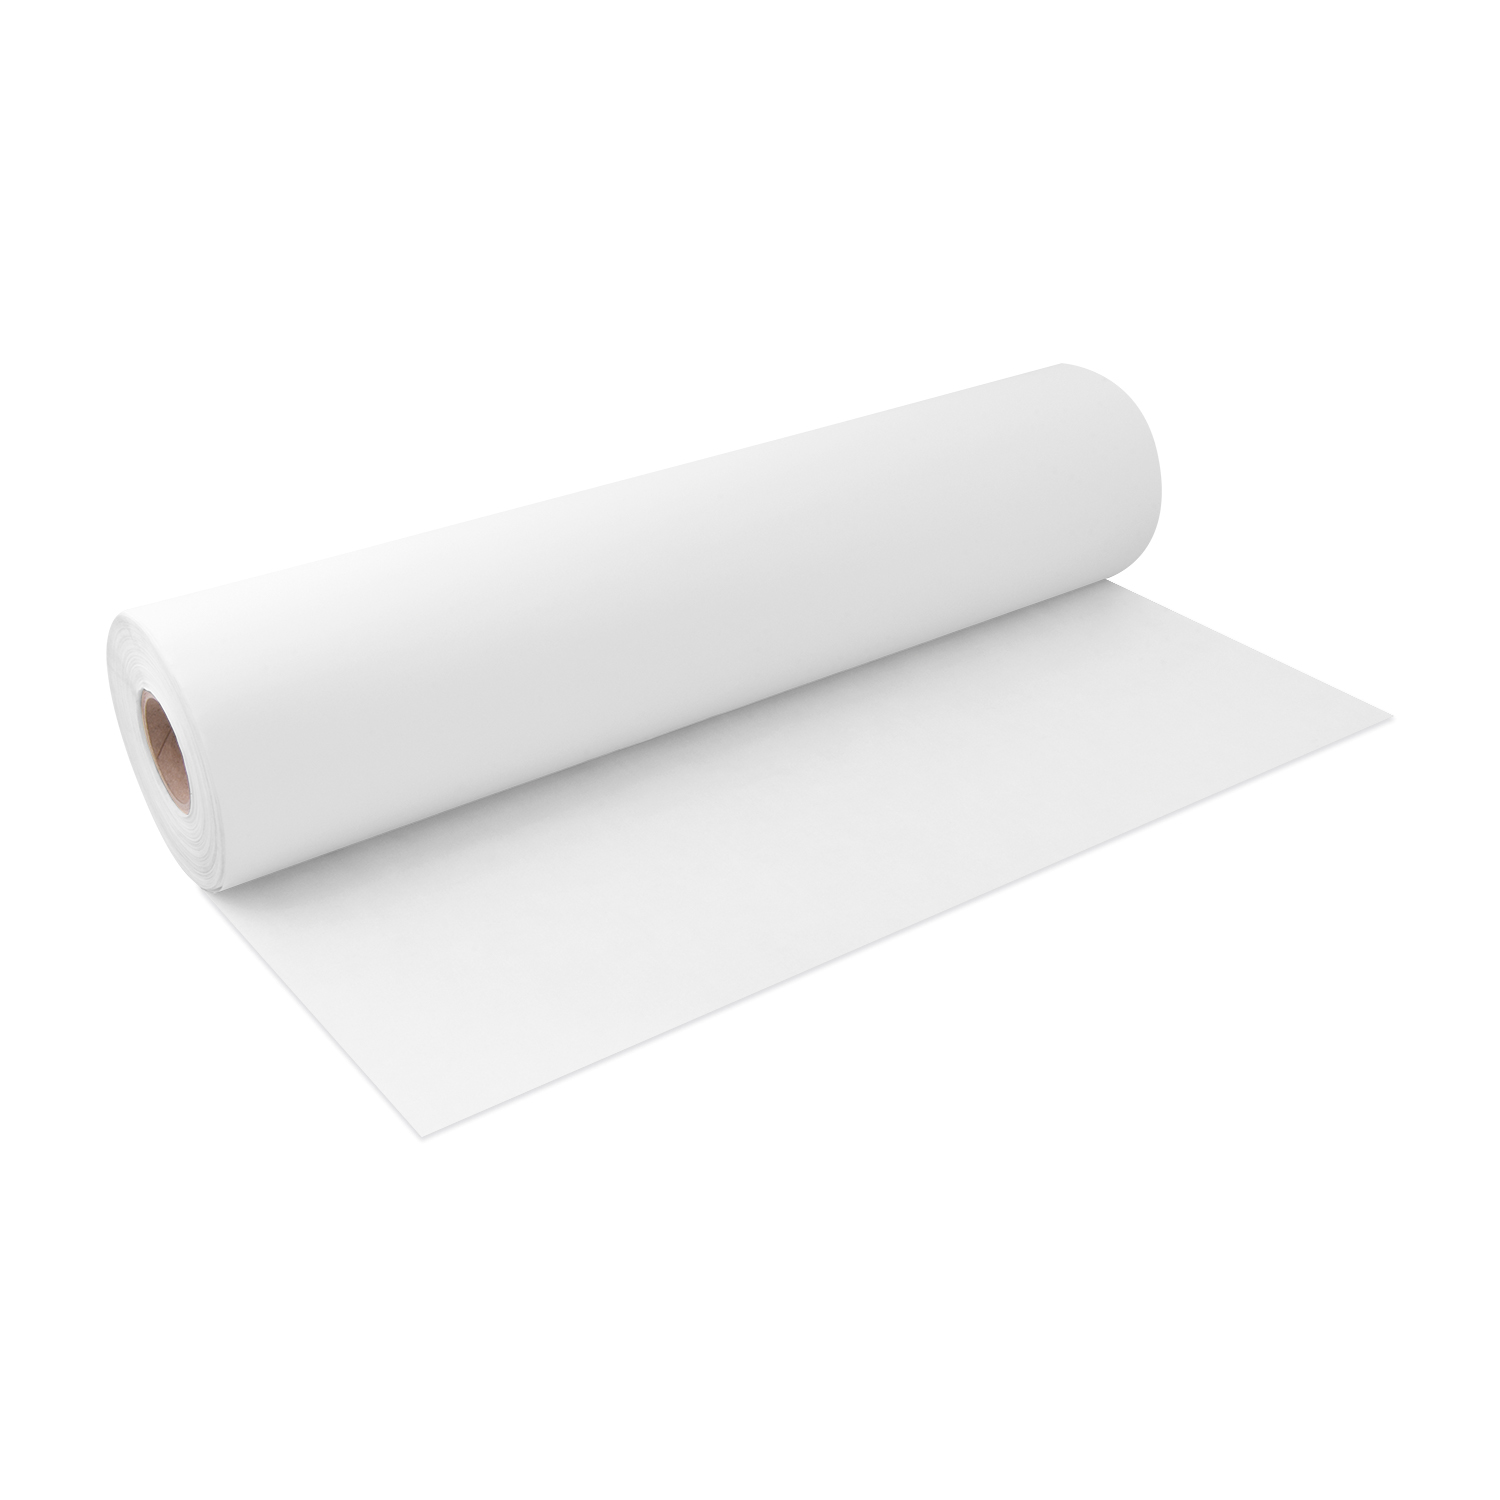 Backpapier gerollt weiß 57cm x 200m - 1 Stück